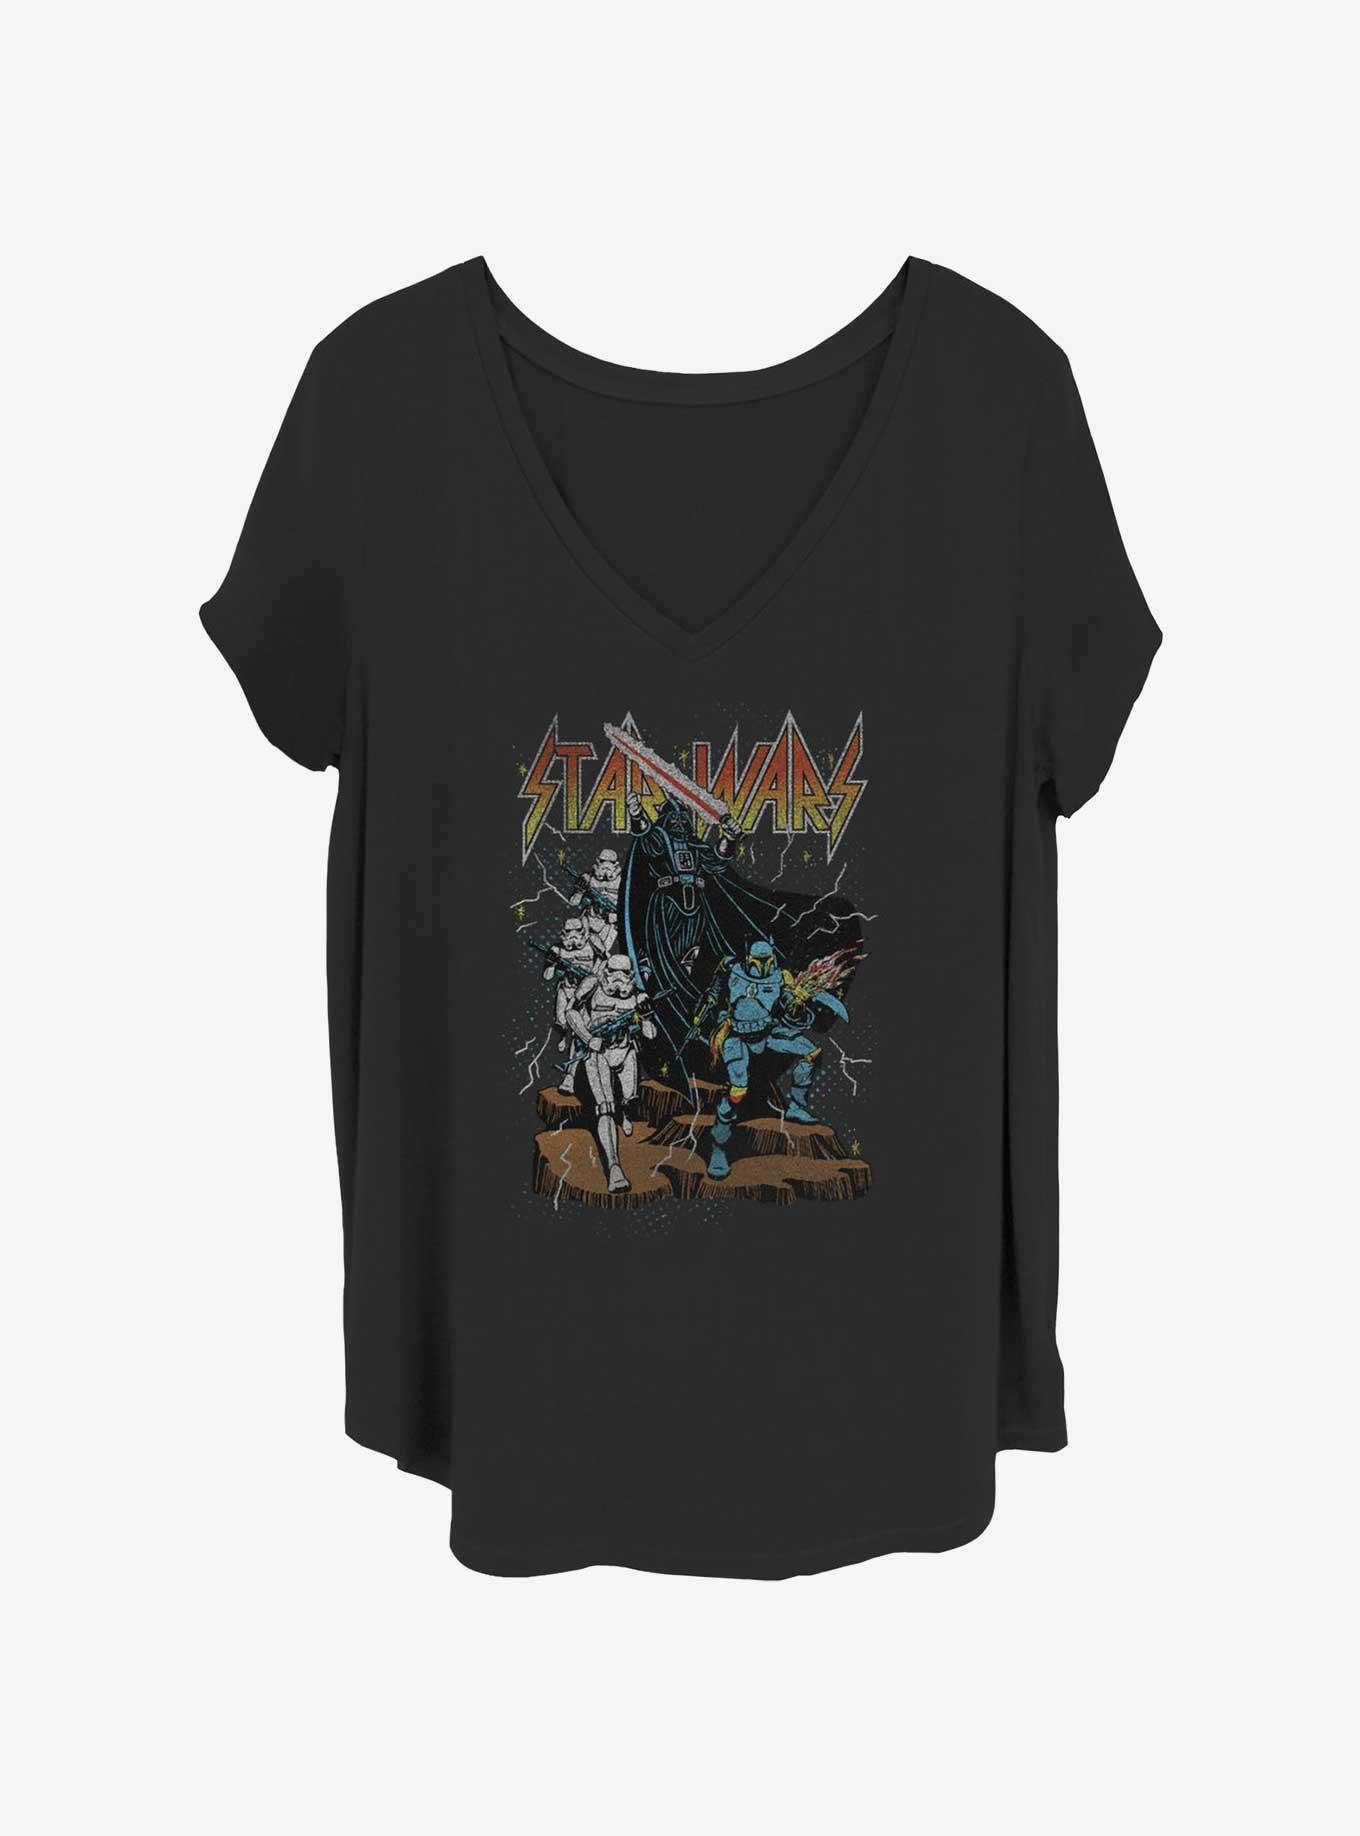 Star Wars Metal Girls T-Shirt Plus